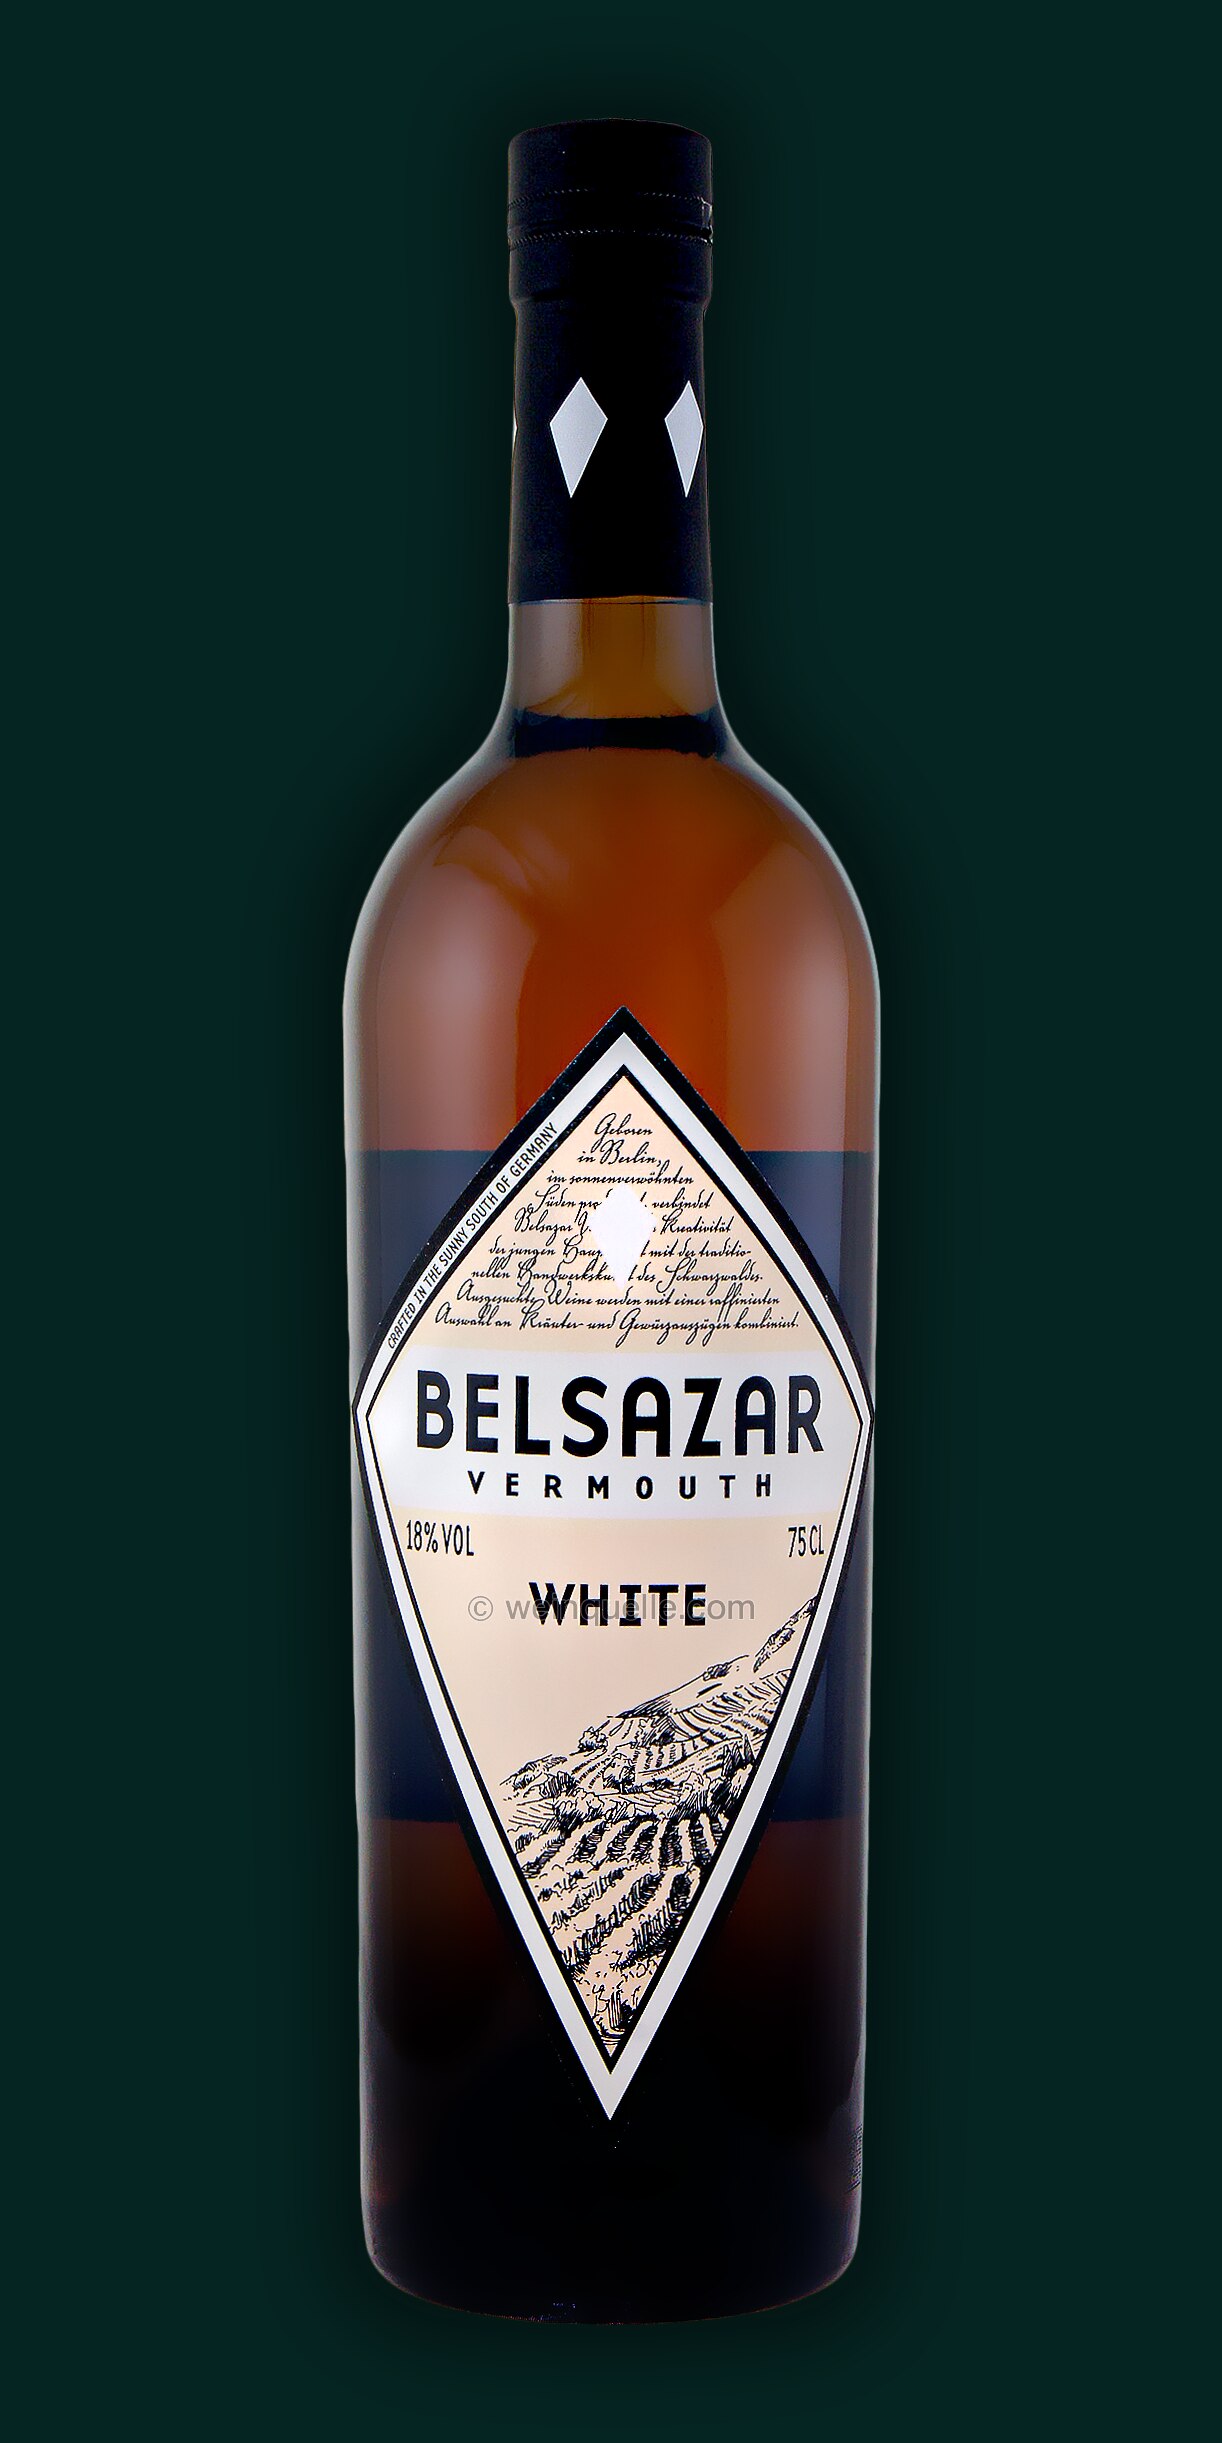 Belsazar Vermouth White 18,50 Lühmann € 0,75 Liter, Weinquelle 